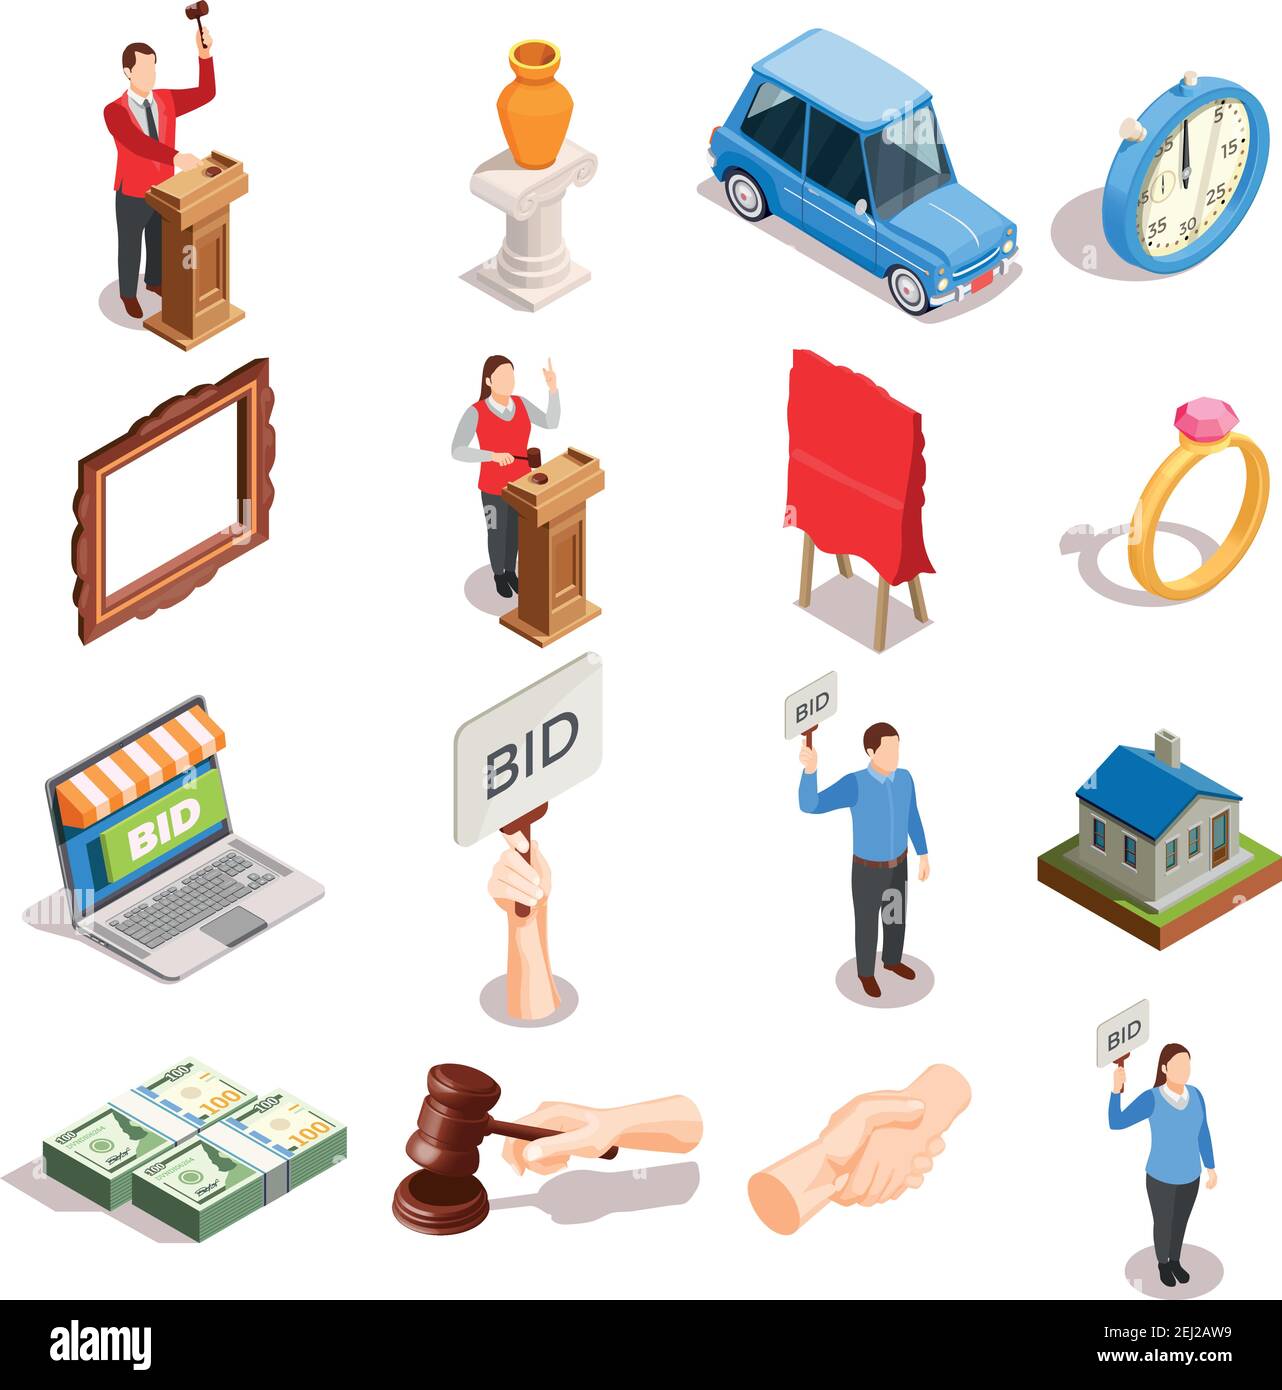 Aste icone isometriche Set di beni isolati personaggi umani martello immagini di handshake e denaro con immagini vettoriali di ombre Illustrazione Vettoriale